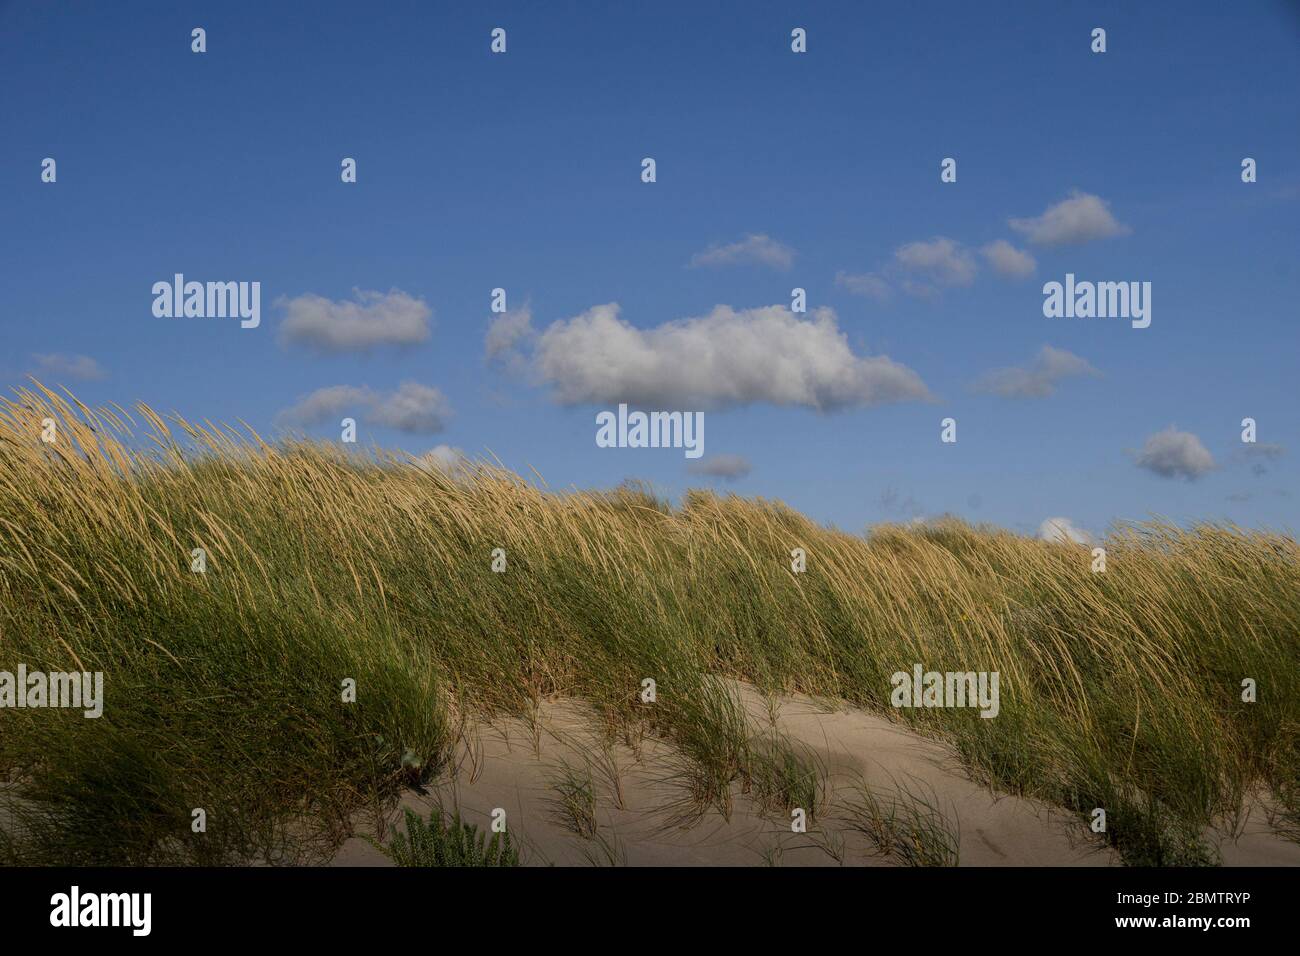 Paesaggio minimalista di dune verdi erbose sulla spiaggia, con nuvole sopra nel cielo blu Foto Stock